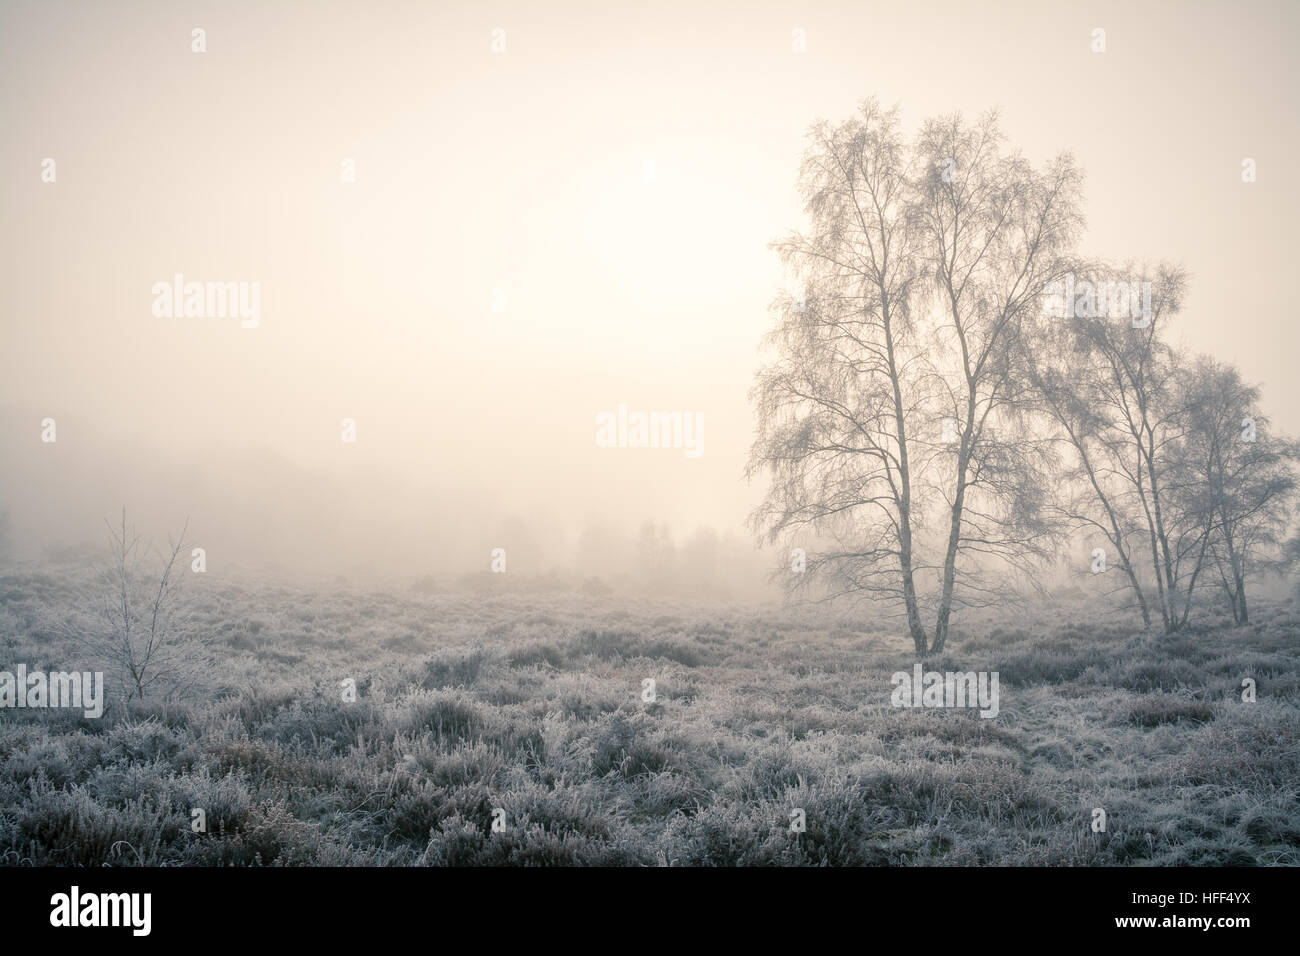 Winterlandschaft Szene von Heide und Bäumen im eisigen Nebel. Frensham Common in der Surrey Hills Area of Outstanding Natural Beauty, Großbritannien Stockfoto